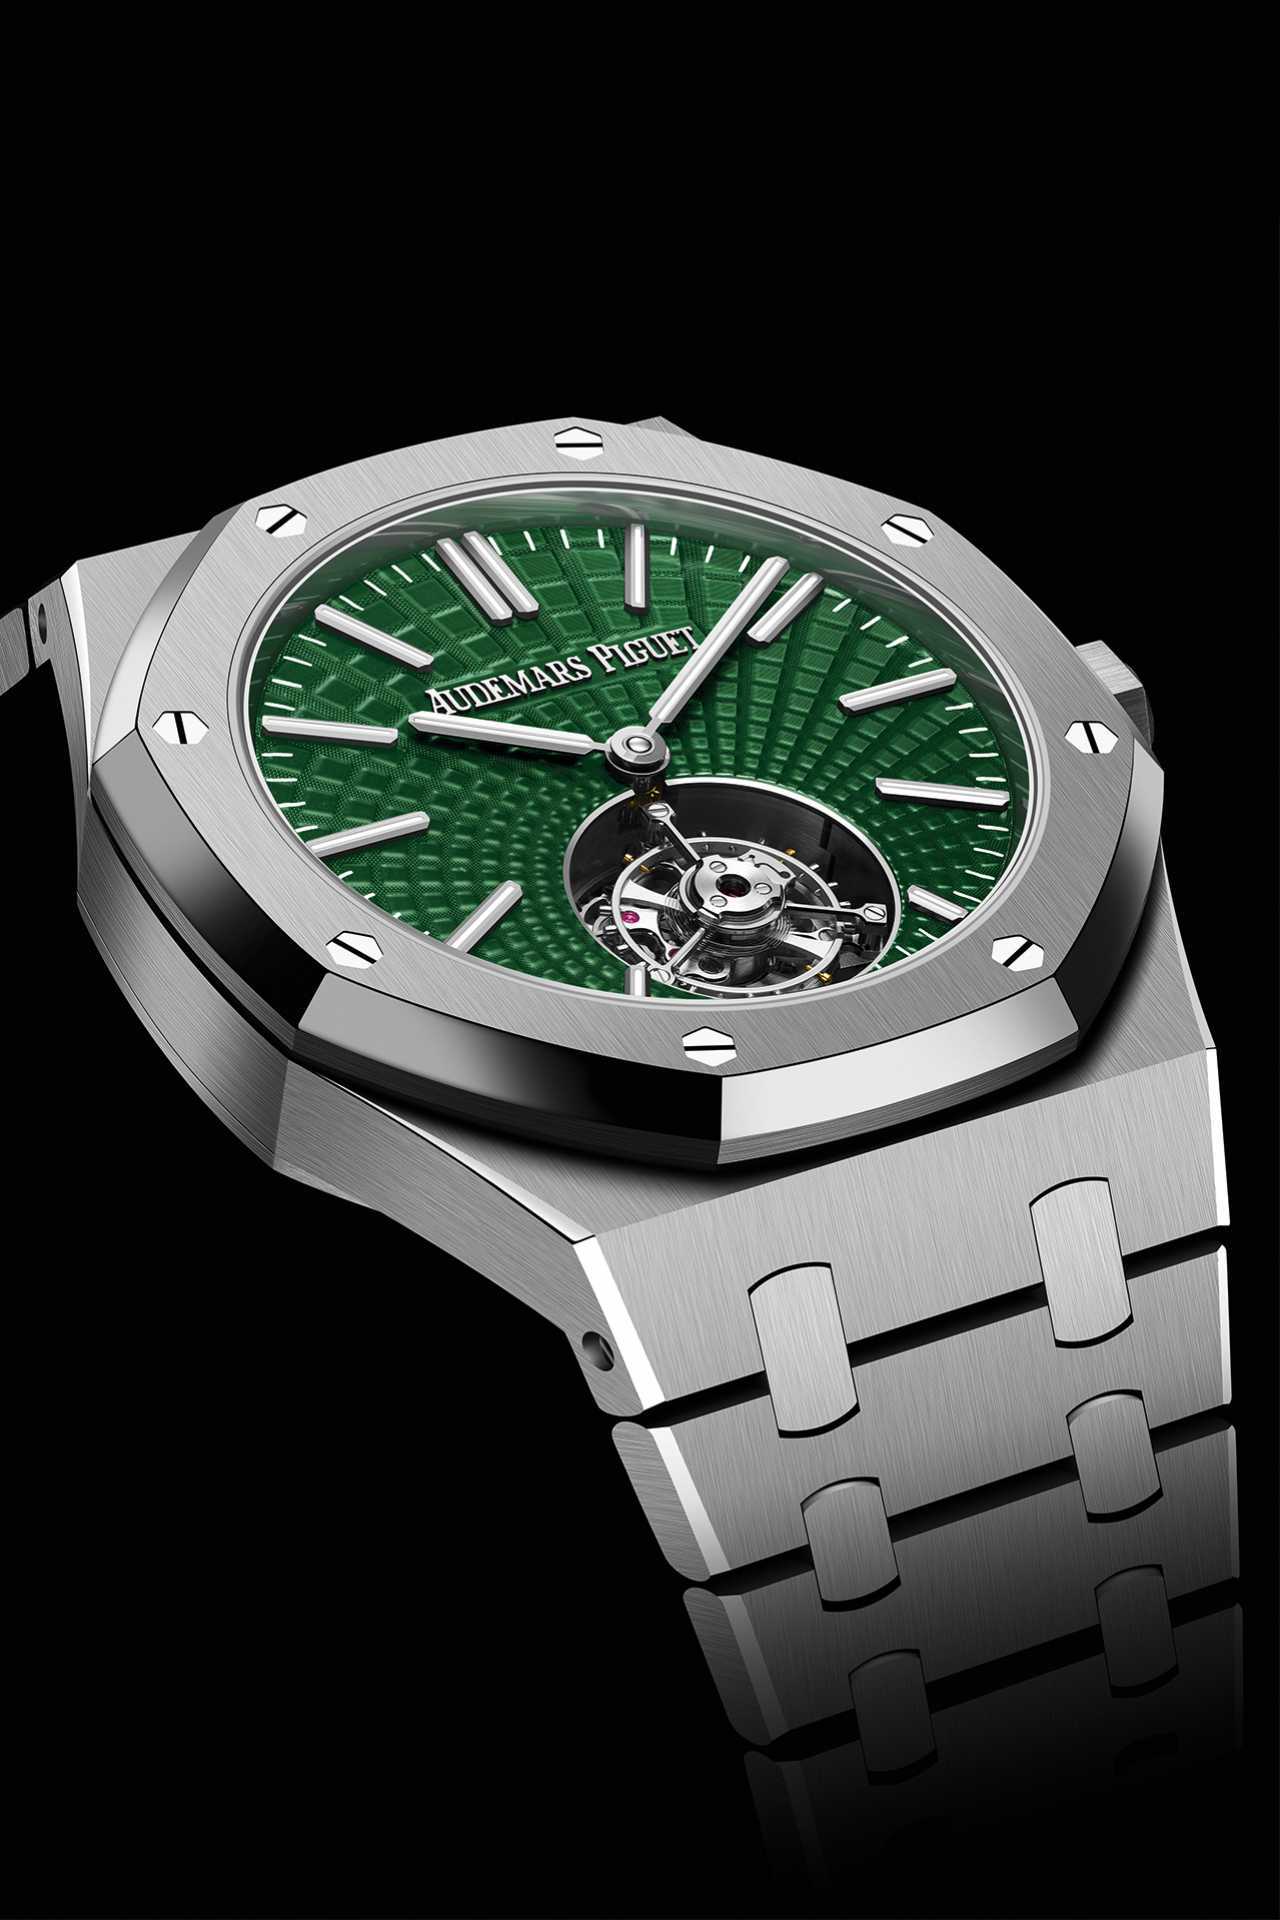 Audemars Piguet Royal Oak green dial watch collection 2021